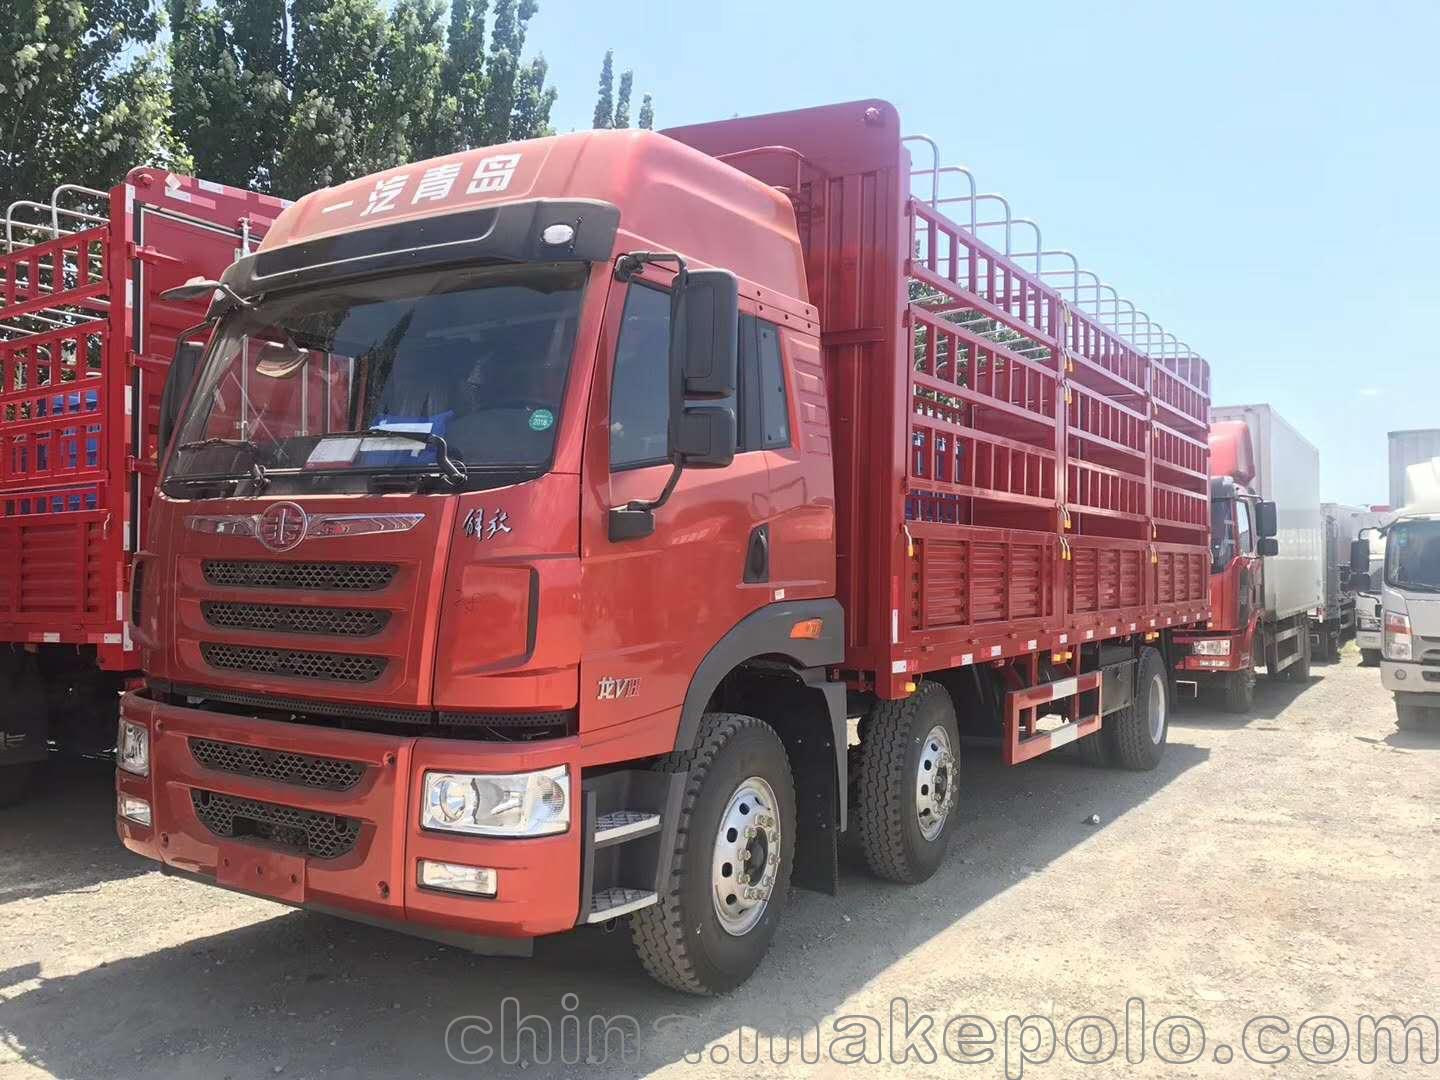 北京一汽青岛解放龙vh南方版6.8米板车载货车专卖销售